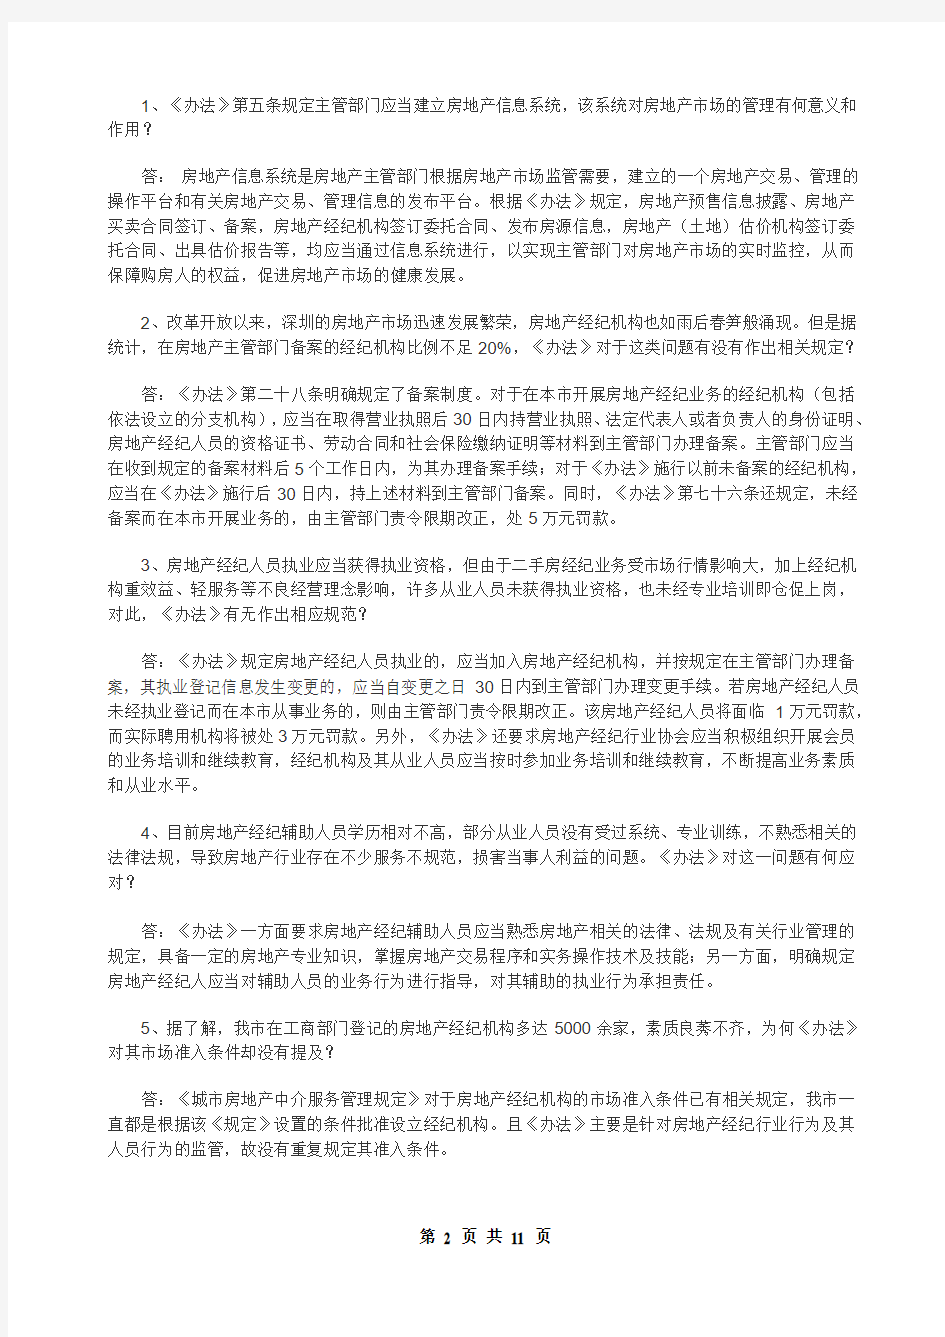 《深圳市房地产市场监管办法》问答课件8页